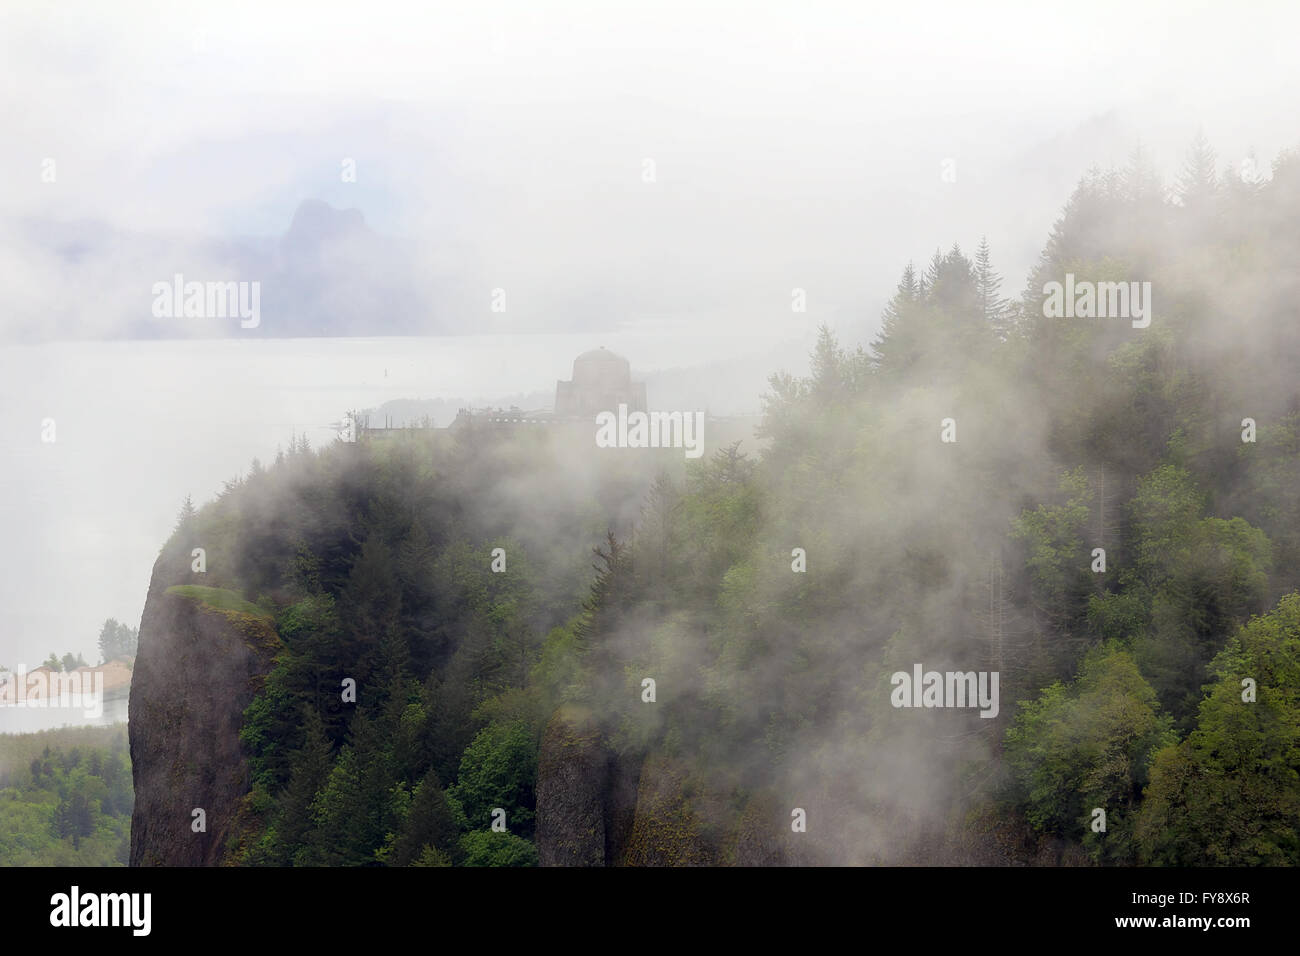 Vista-Haus am Crown Point am Columbia River Gorge Oregon bedeckt in tief hängenden Wolken Nebel Stockfoto